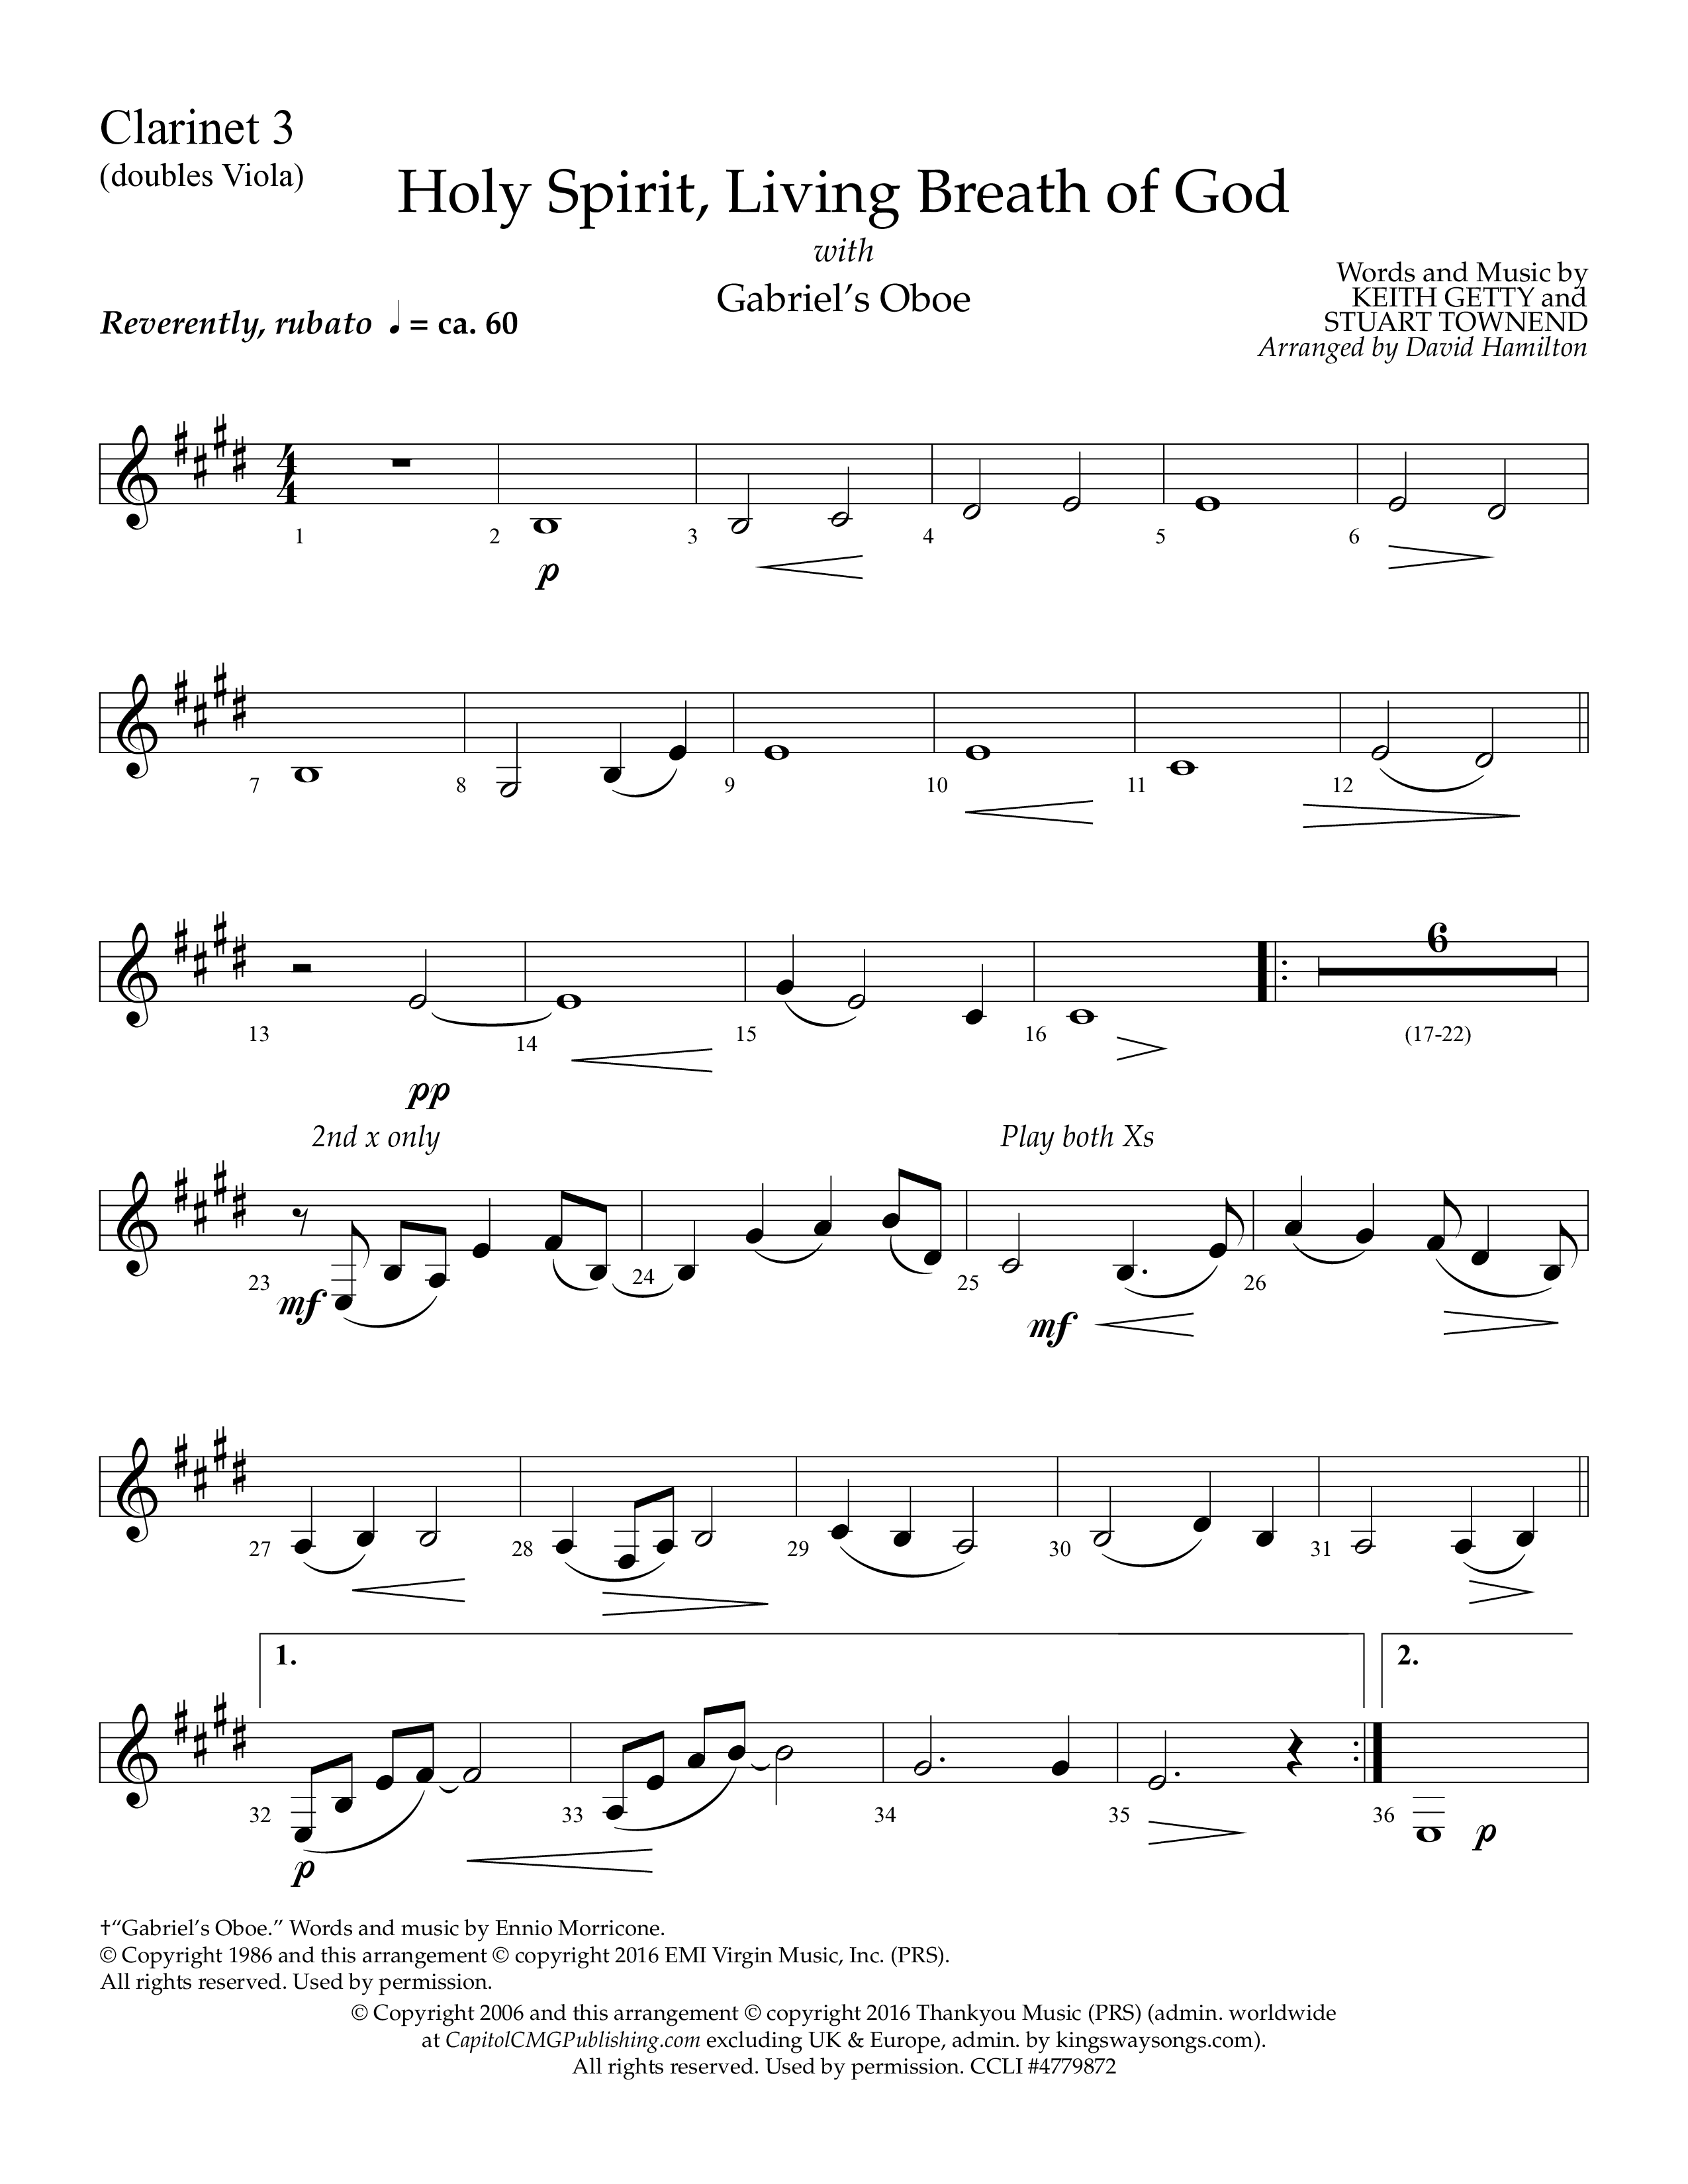 Holy Spirit Living Breath Of God (with Gabriel's Oboe) (Choral Anthem SATB) Clarinet 3 (Lifeway Choral / Arr. David Hamilton)